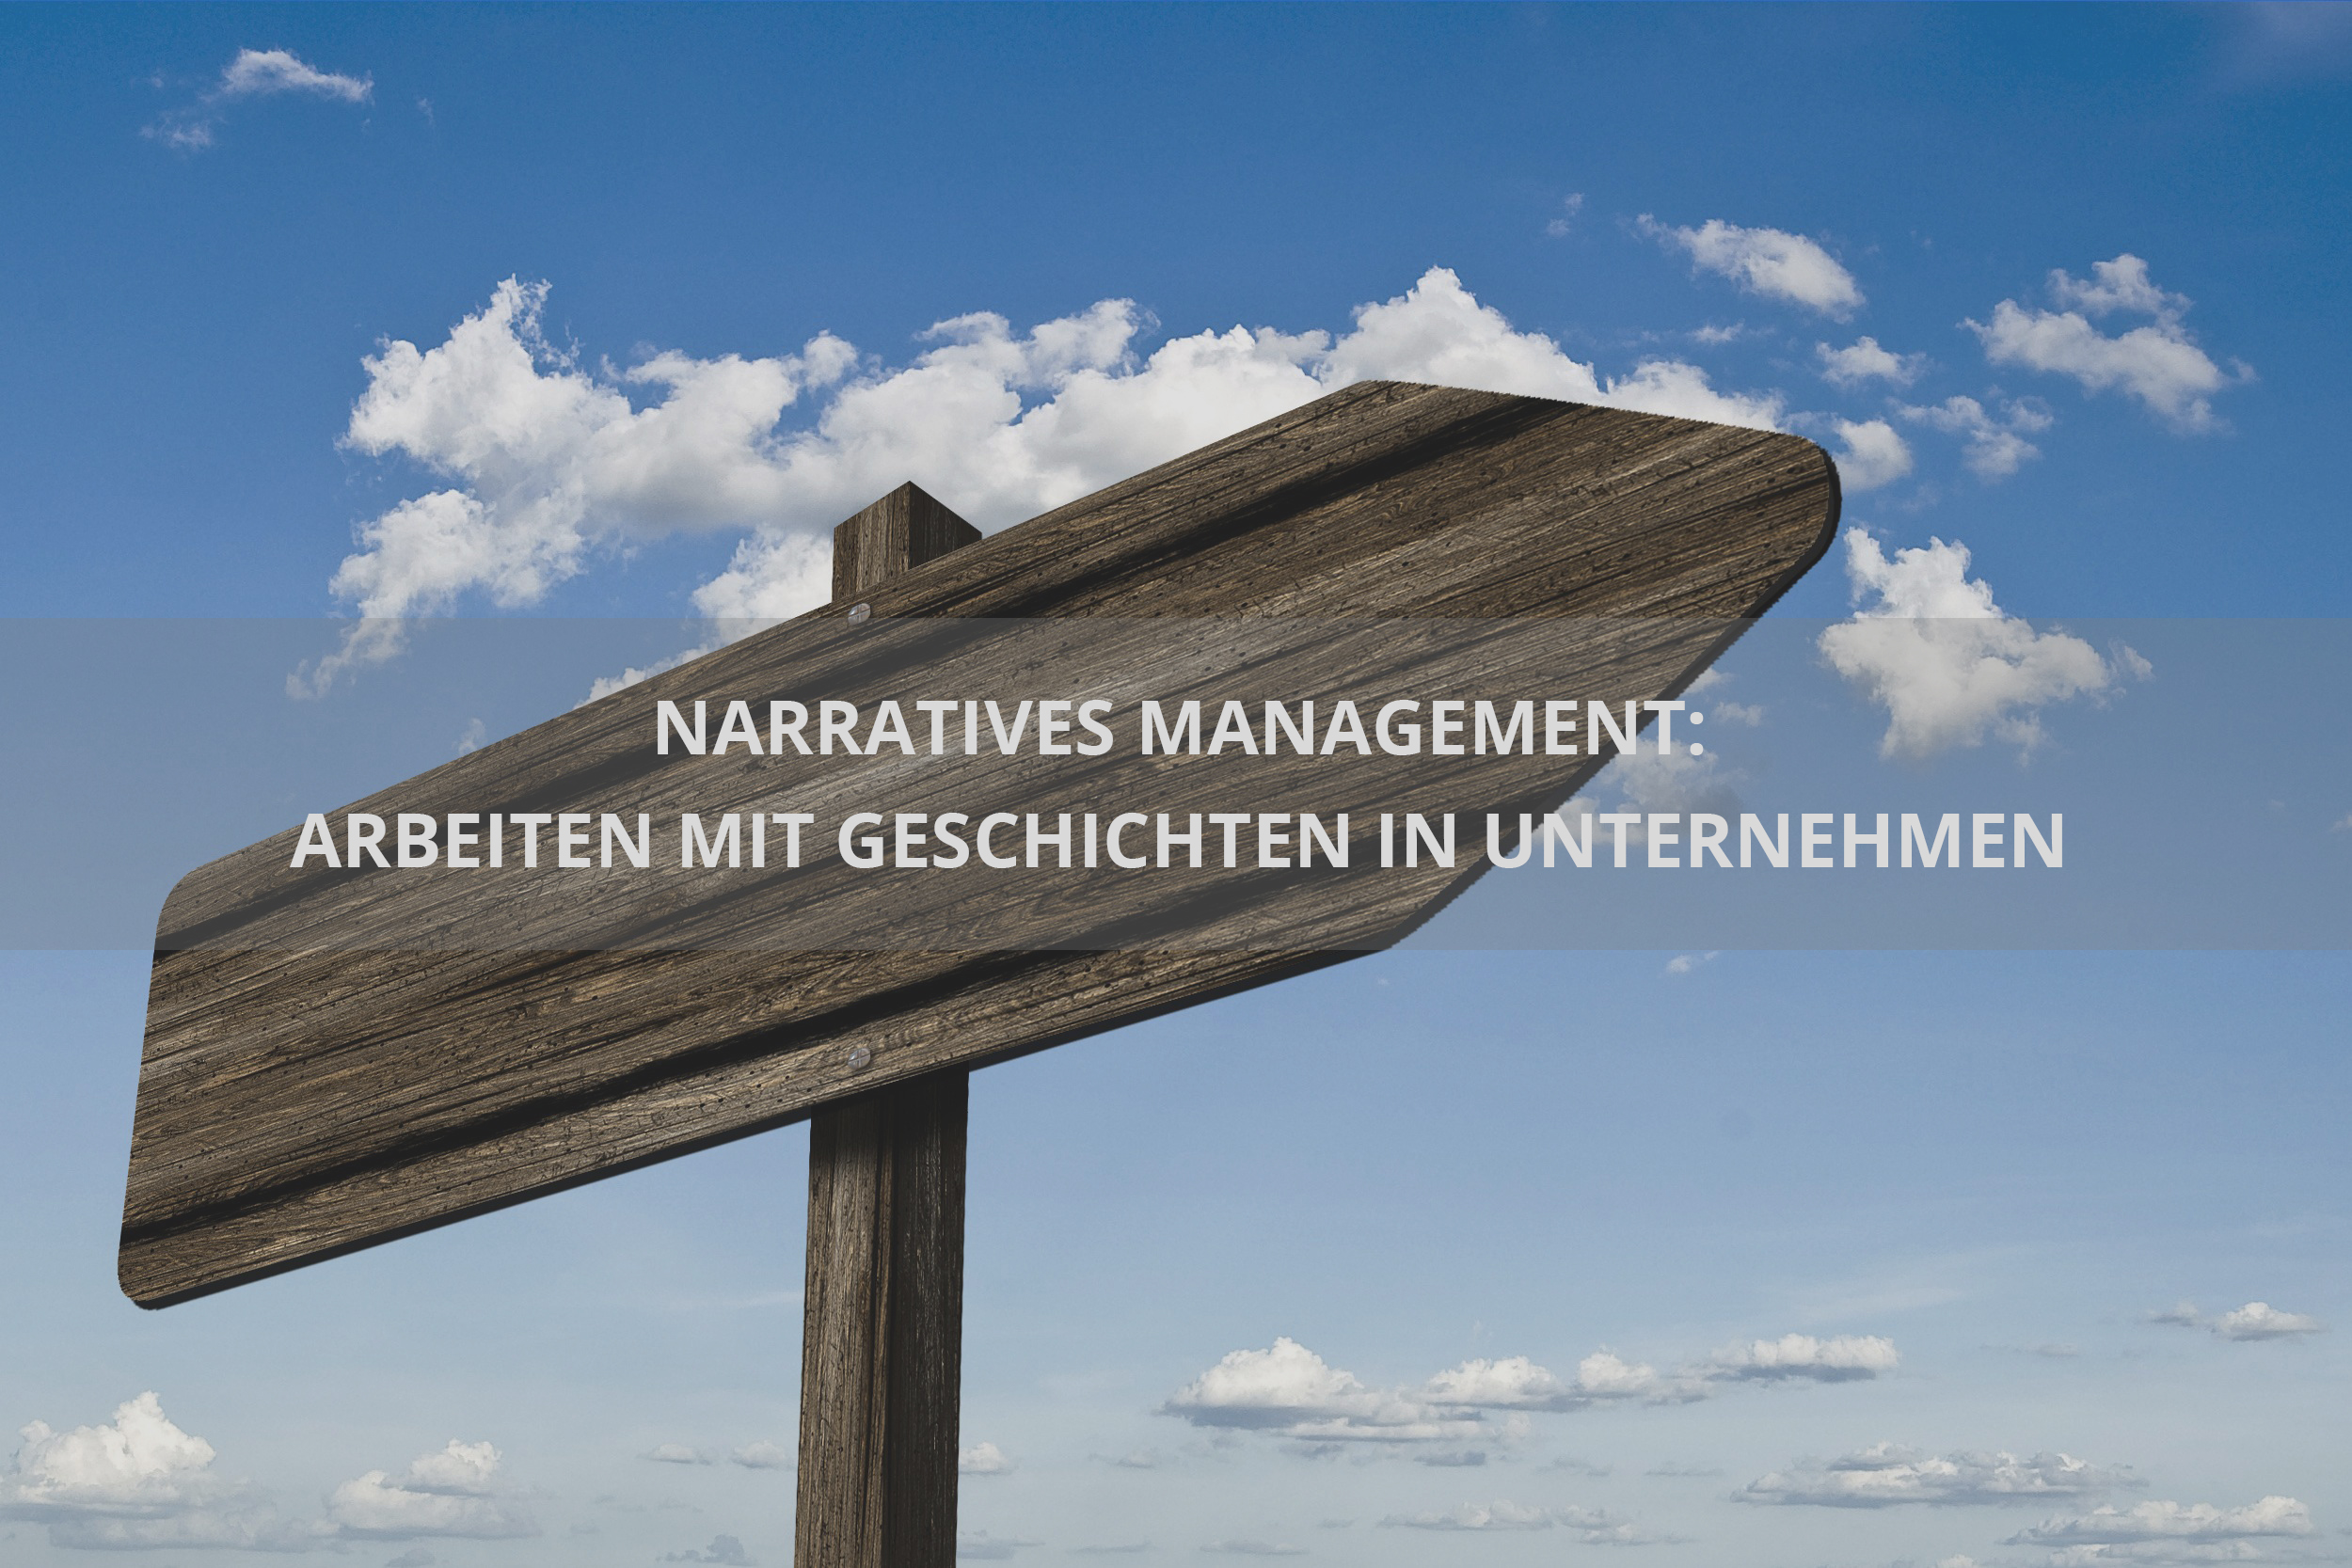 (c) Narratives-management.de